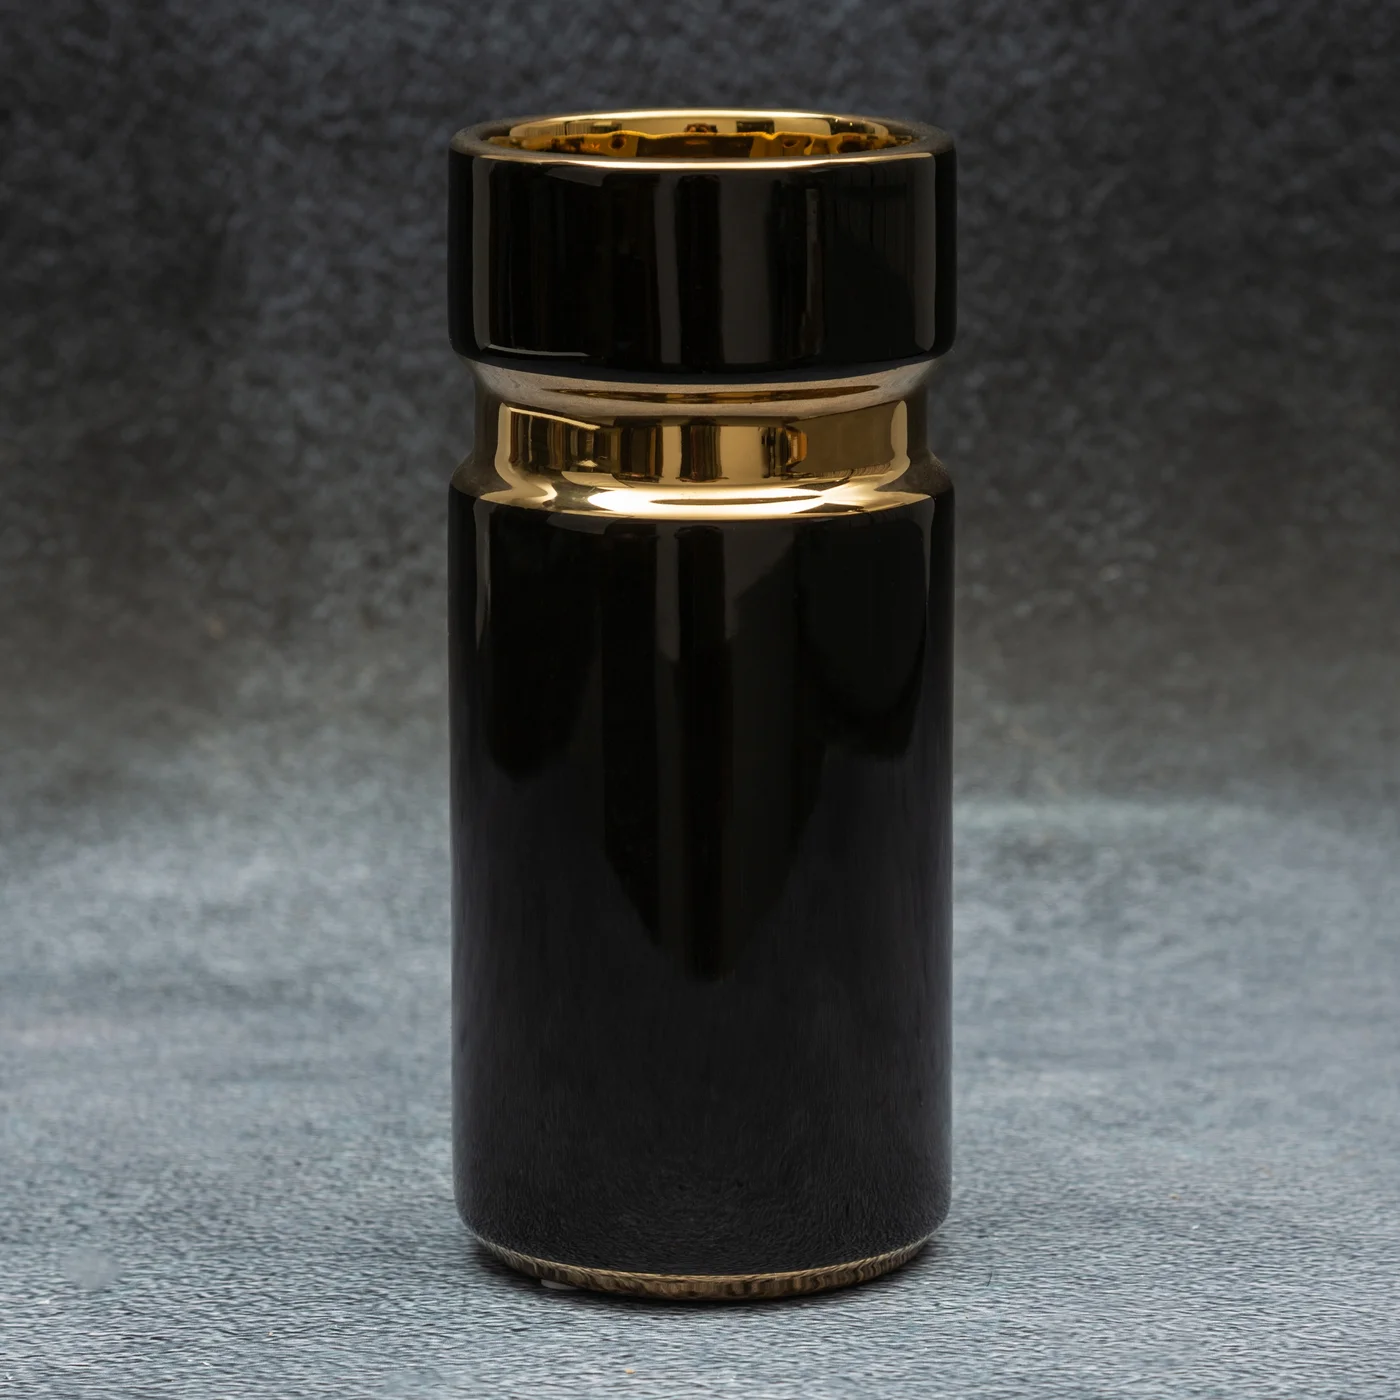 Wazon ceramiczny o nowoczesnym kształcie czarno-złoty z geometrycznym wzorem